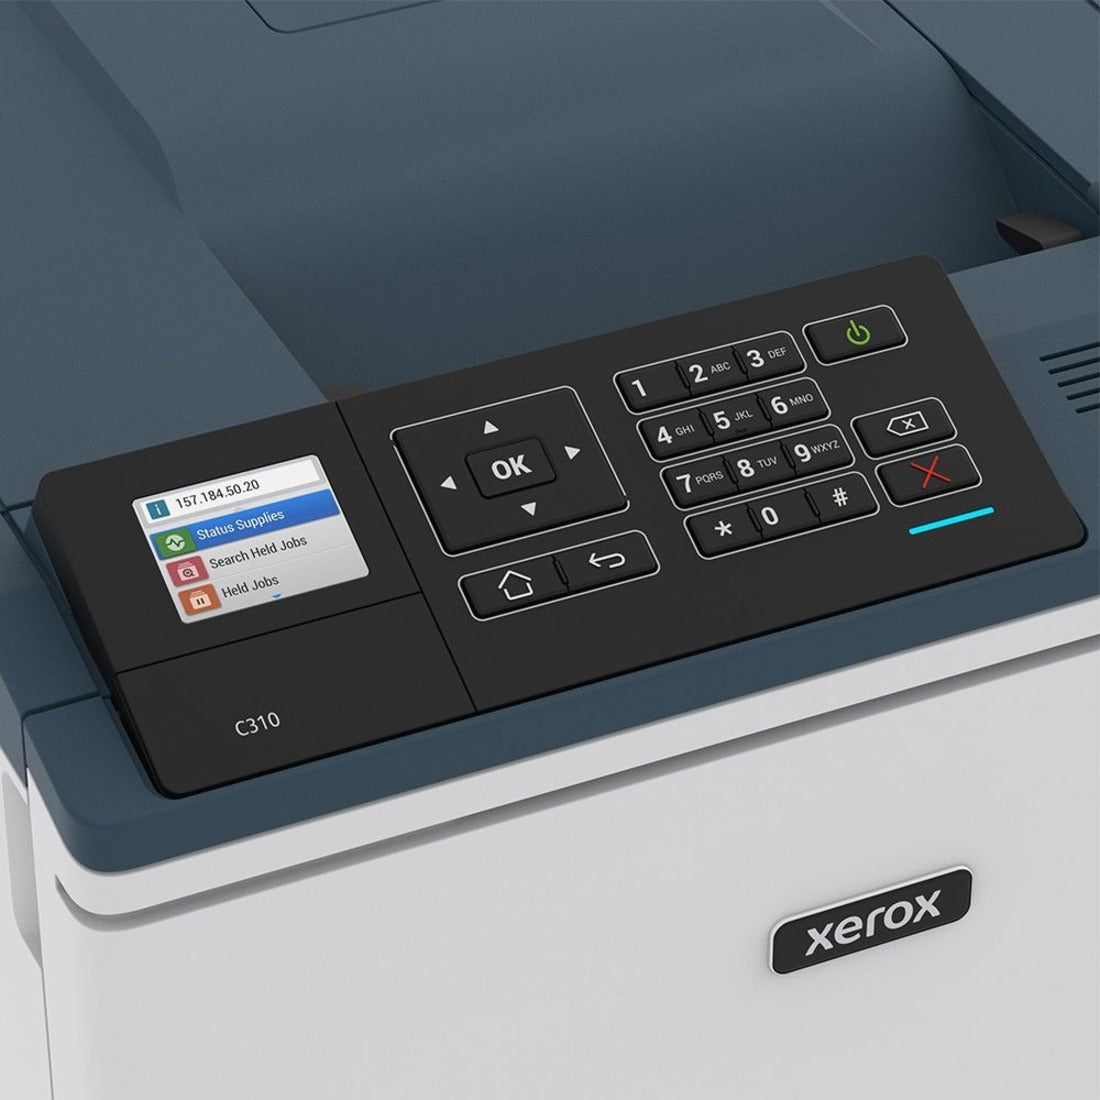 施乐 C310/DNI C310 颜色激光打印机，无线，自动双面打印，35 页/分钟，1200 x 1200 dpi 品牌名称：施乐 施乐 - Xerox